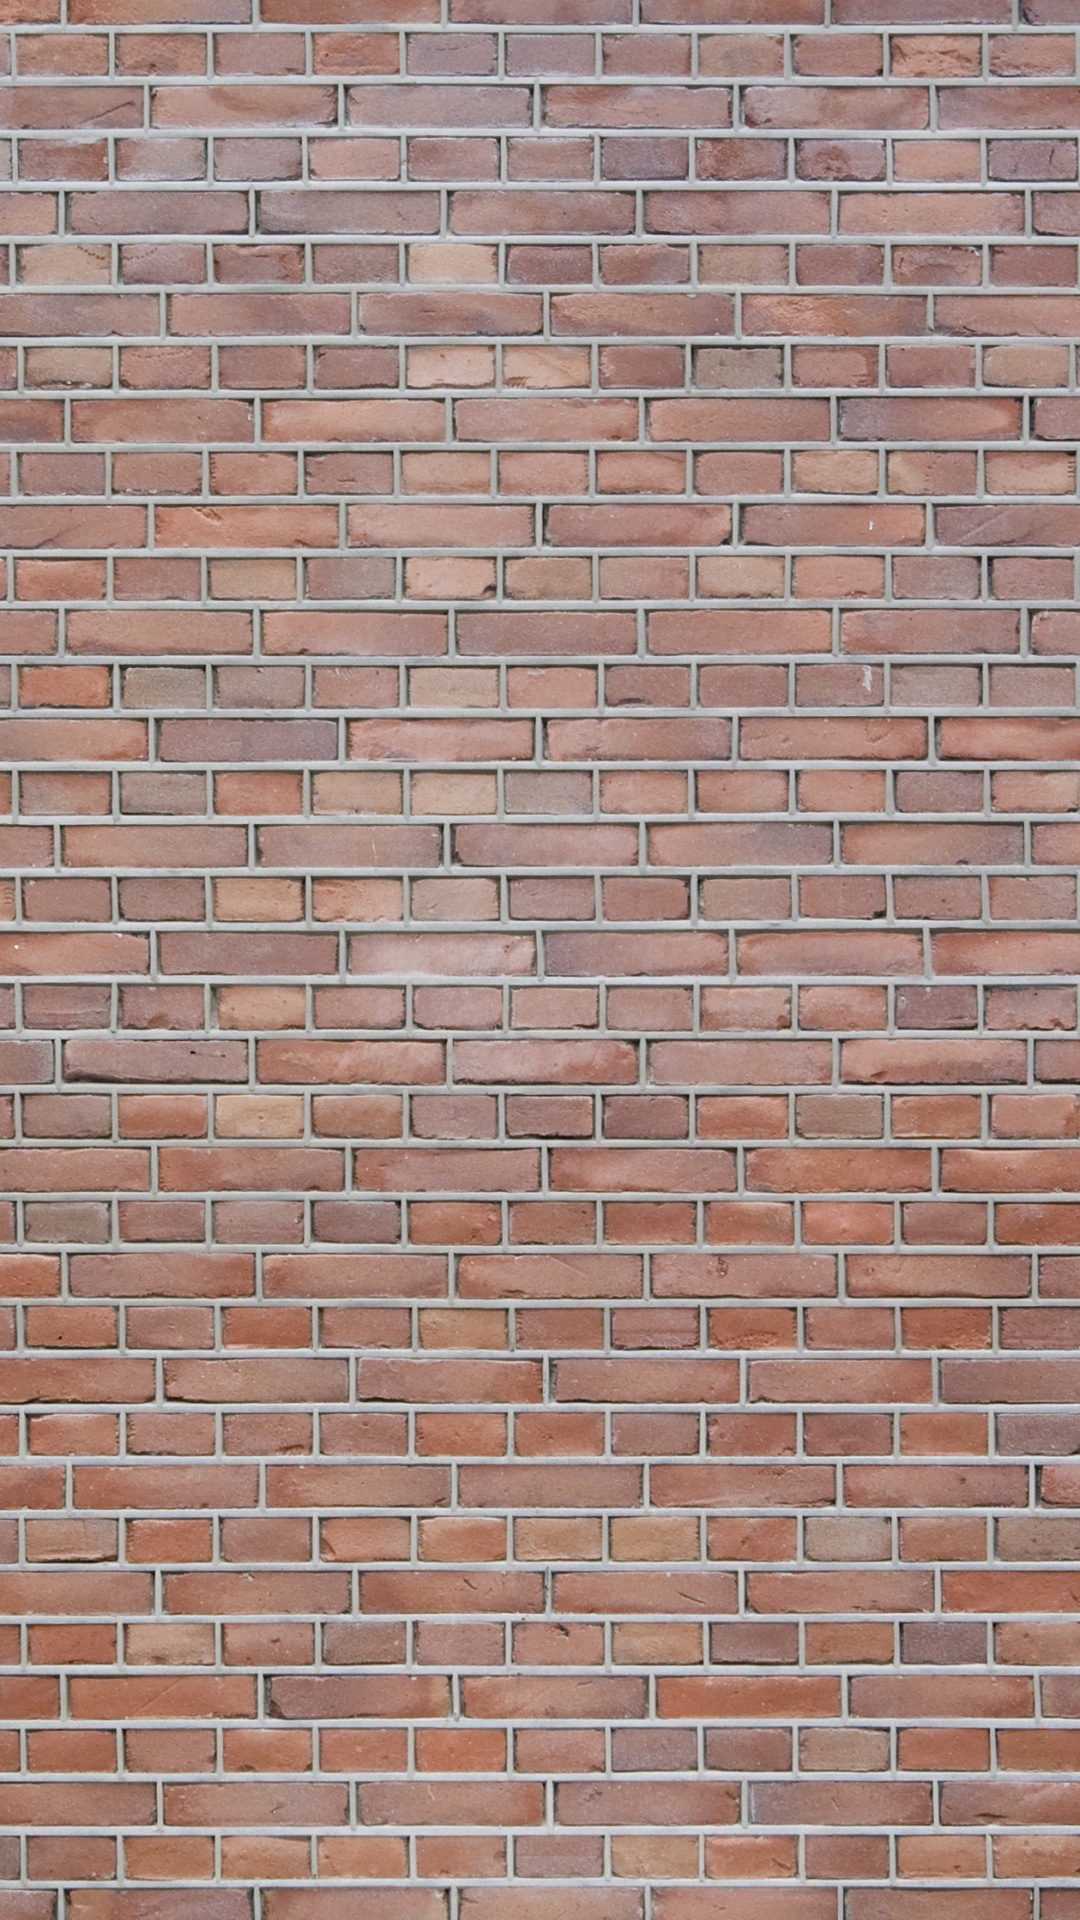 Mur de Briques Brunes Pendant la Journée. Wallpaper in 1080x1920 Resolution